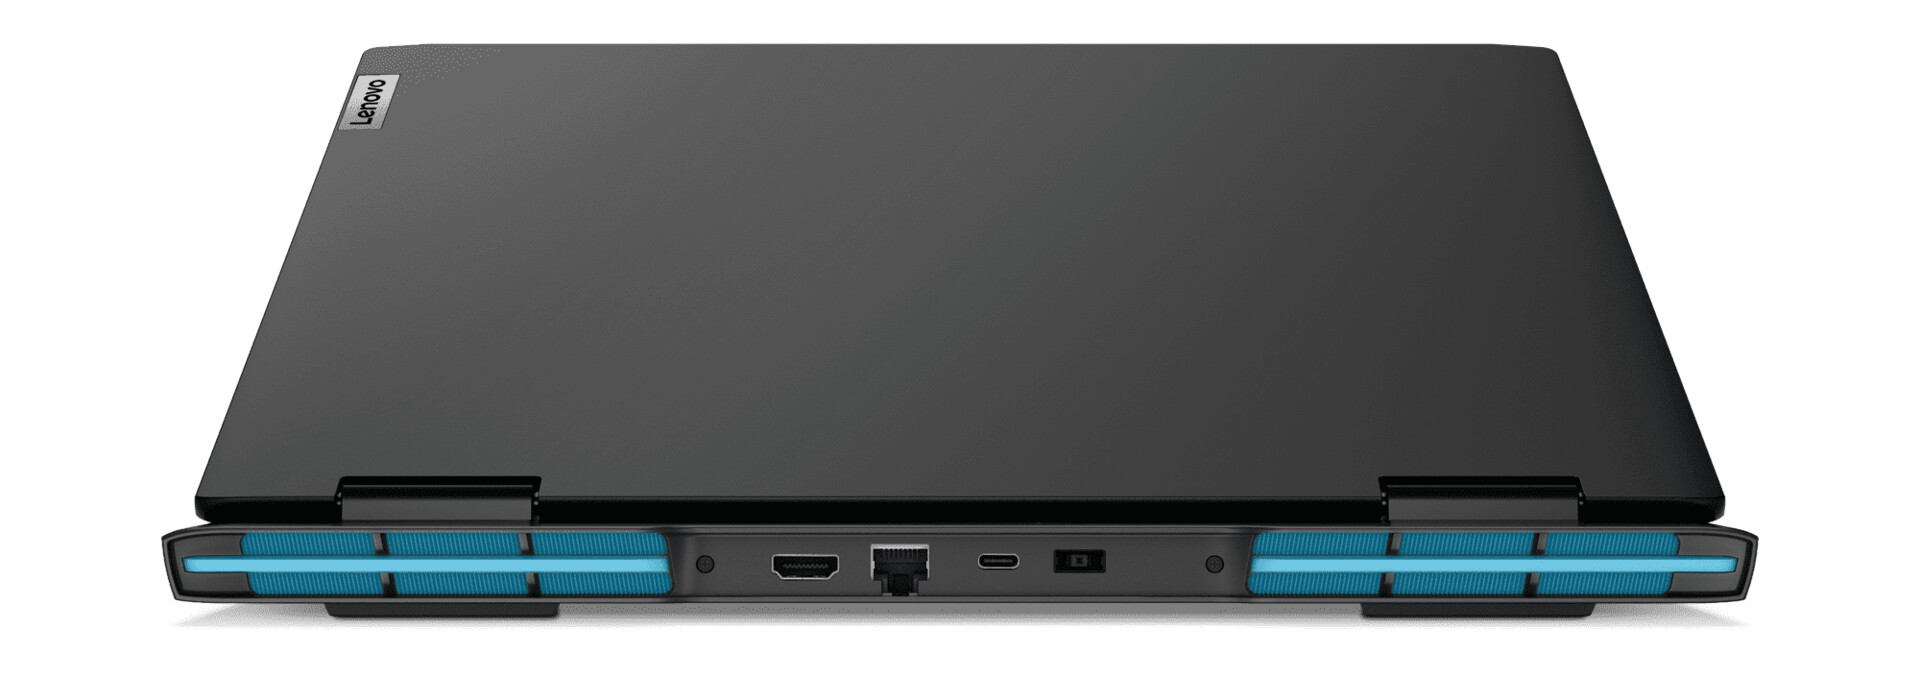 [MWC 2022] Lenovo presenta nuevos portátiles IdeaPad Gaming 3